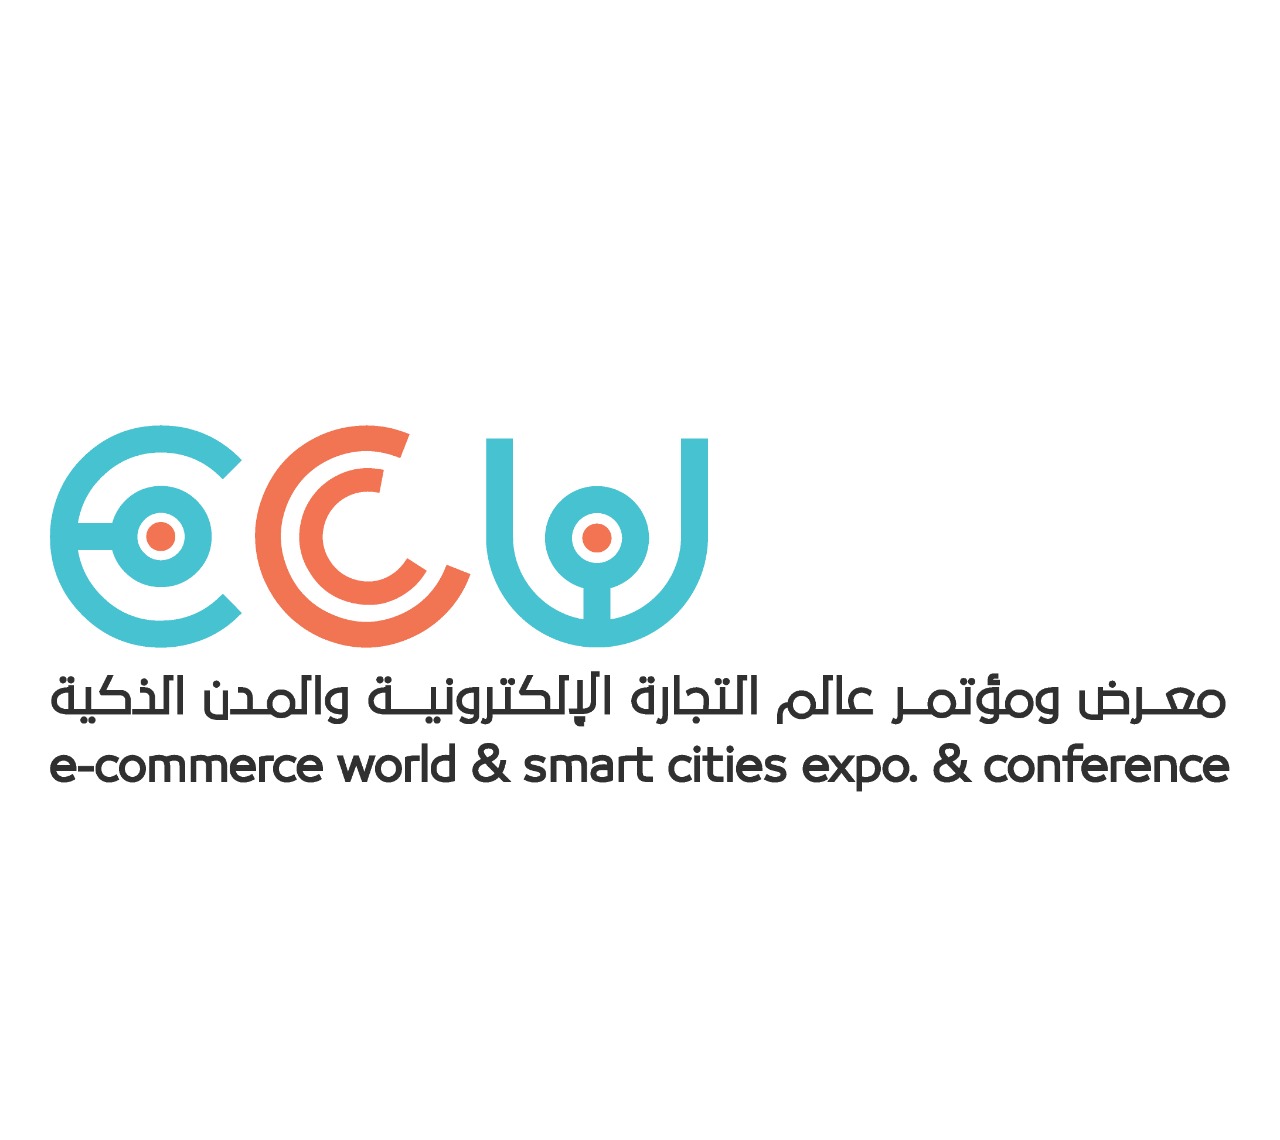 الرياض تستضيف المعرض والمؤتمر الدولي الثالث لعالم التجارة الإلكترونية والمدن الذكية